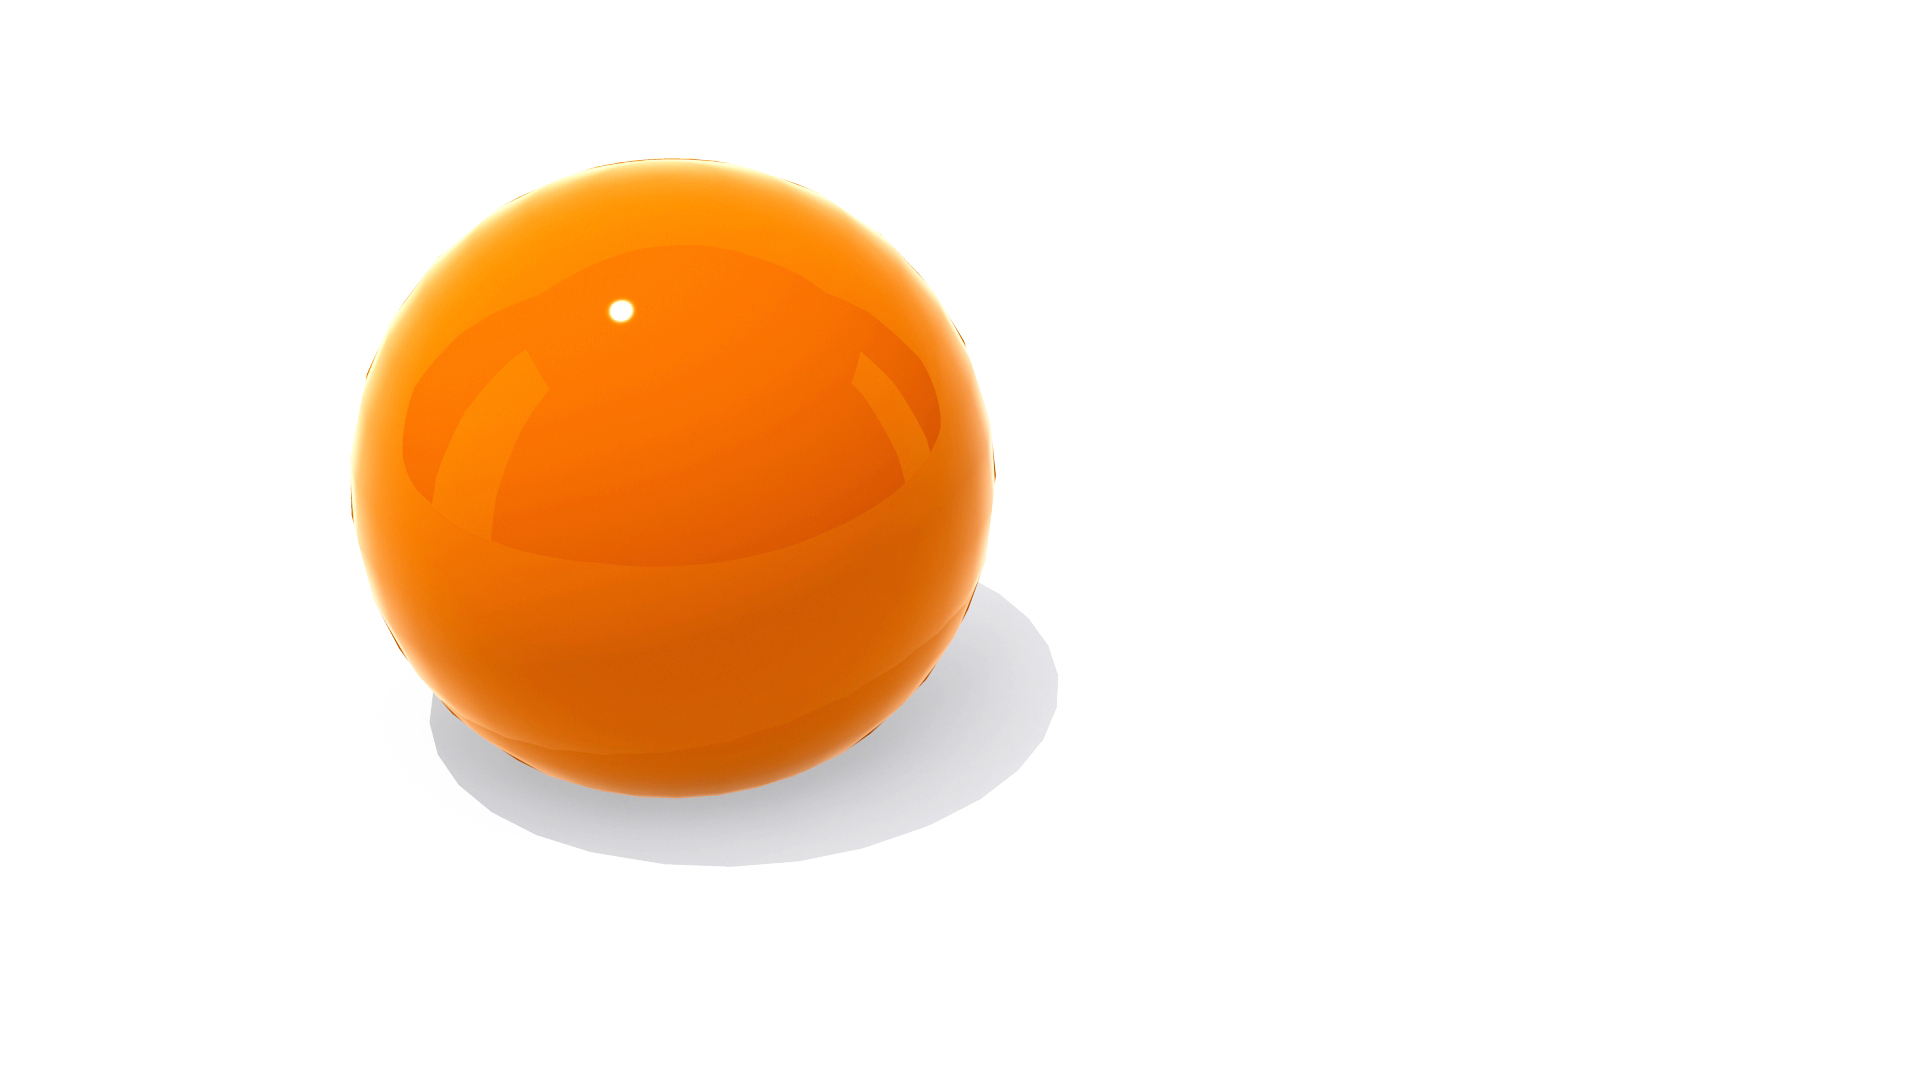 The Orange Sphere